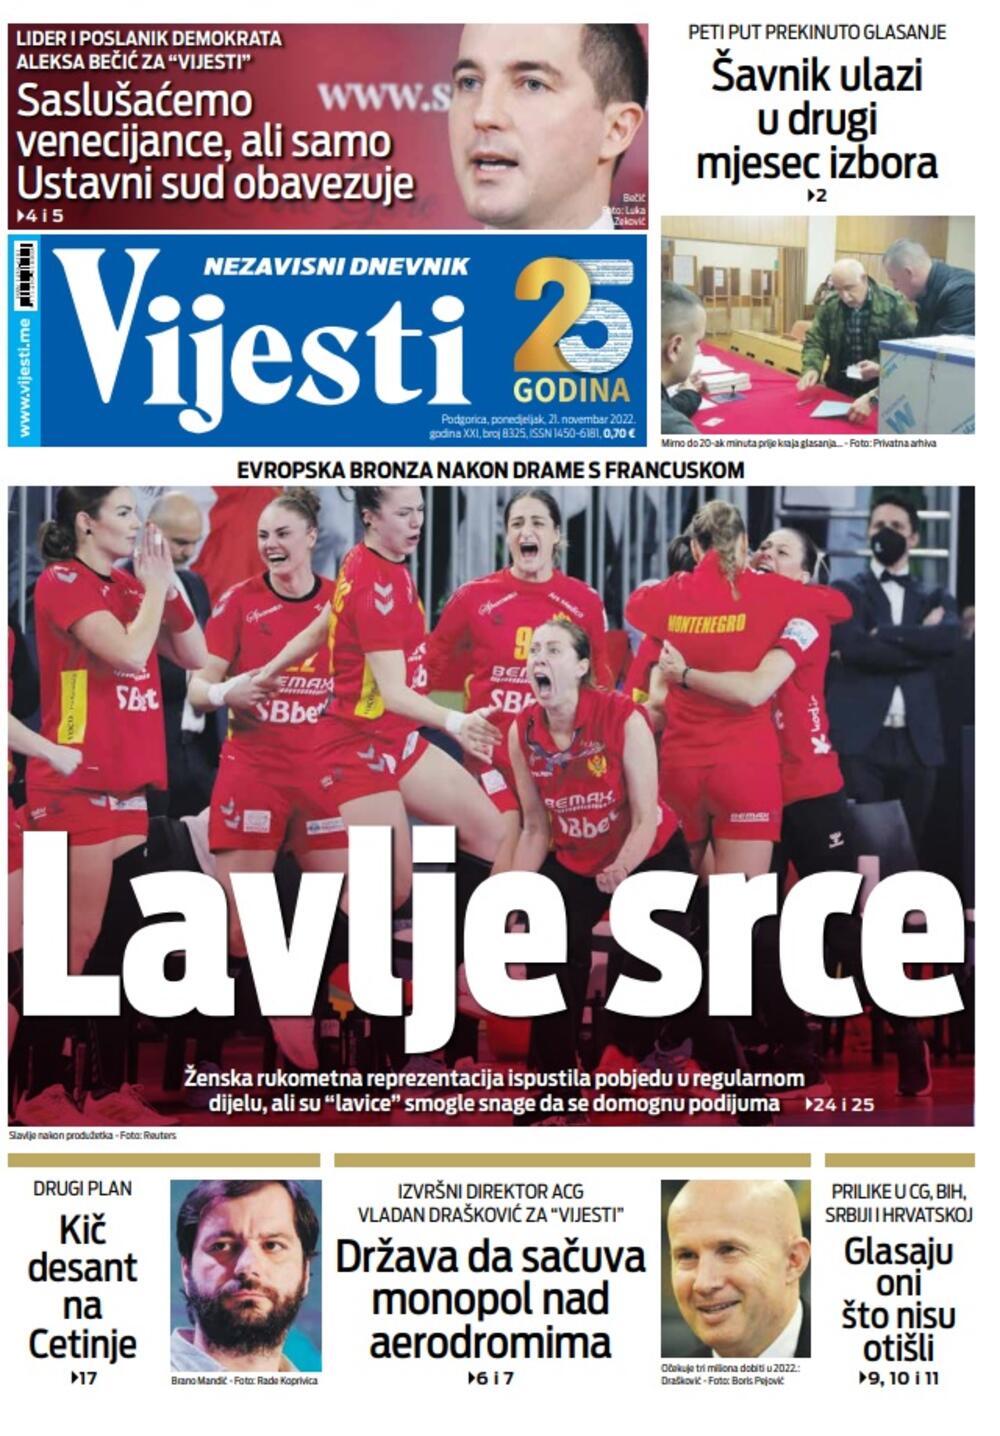 Naslovna strana "Vijesti" za 21. novembar 2022., Foto: Vijesti